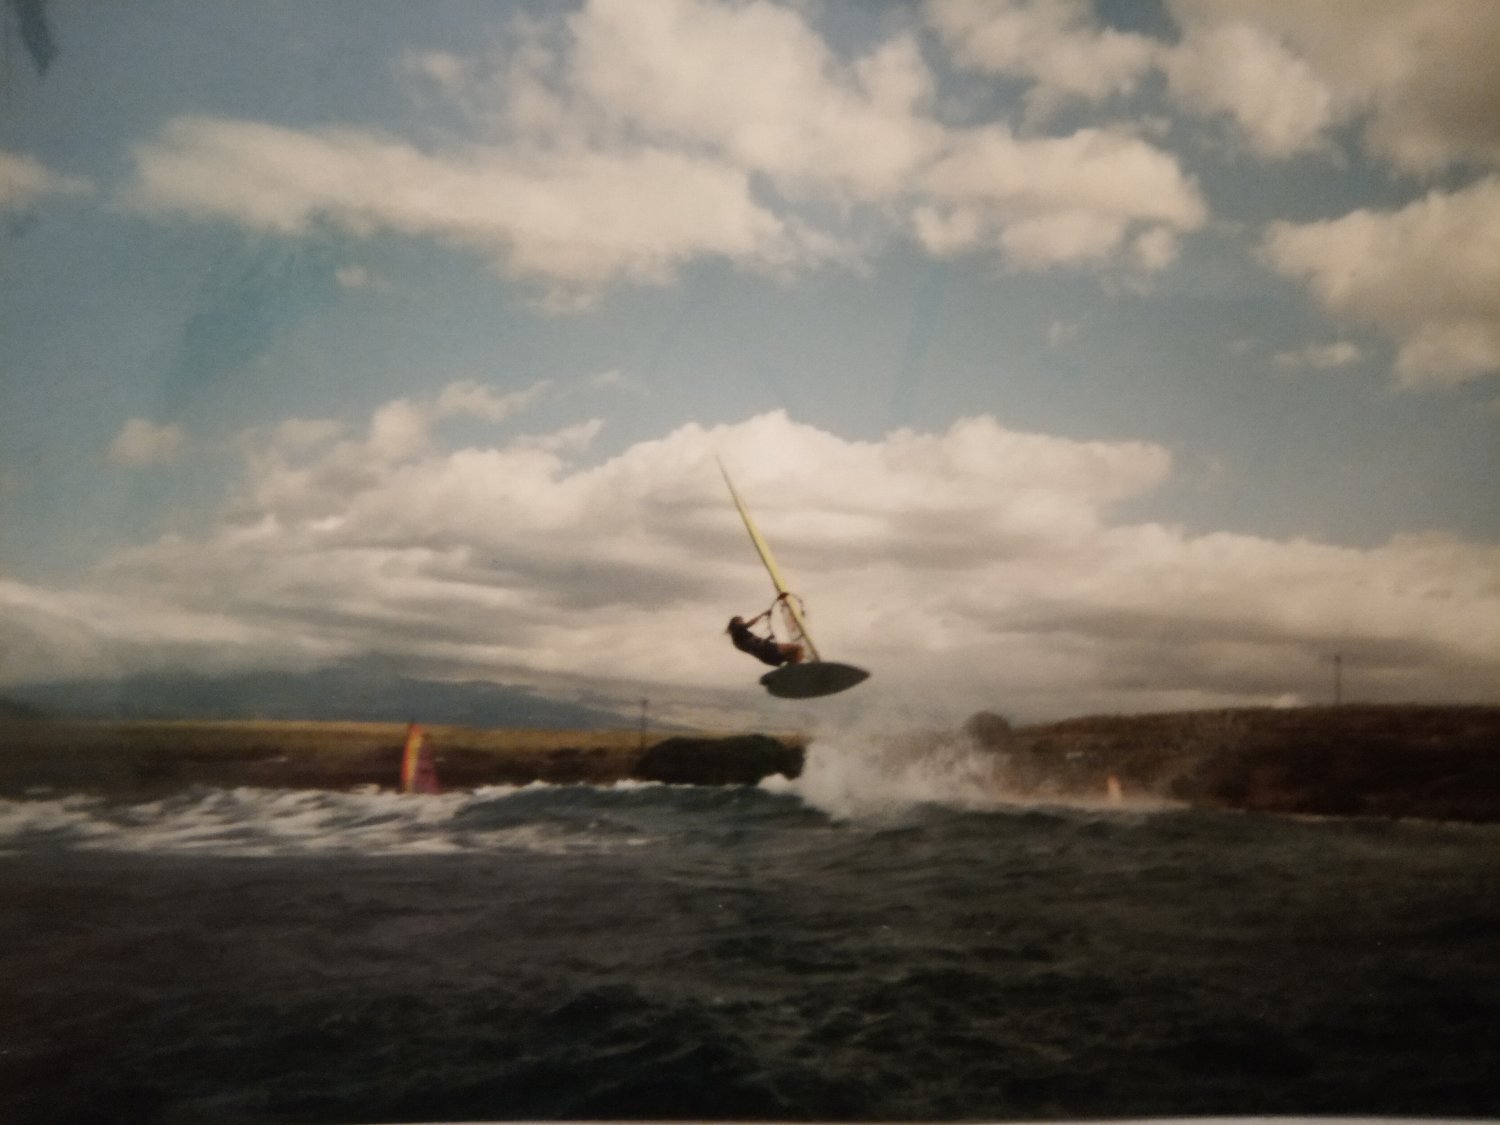 22.03.1993 - Maui